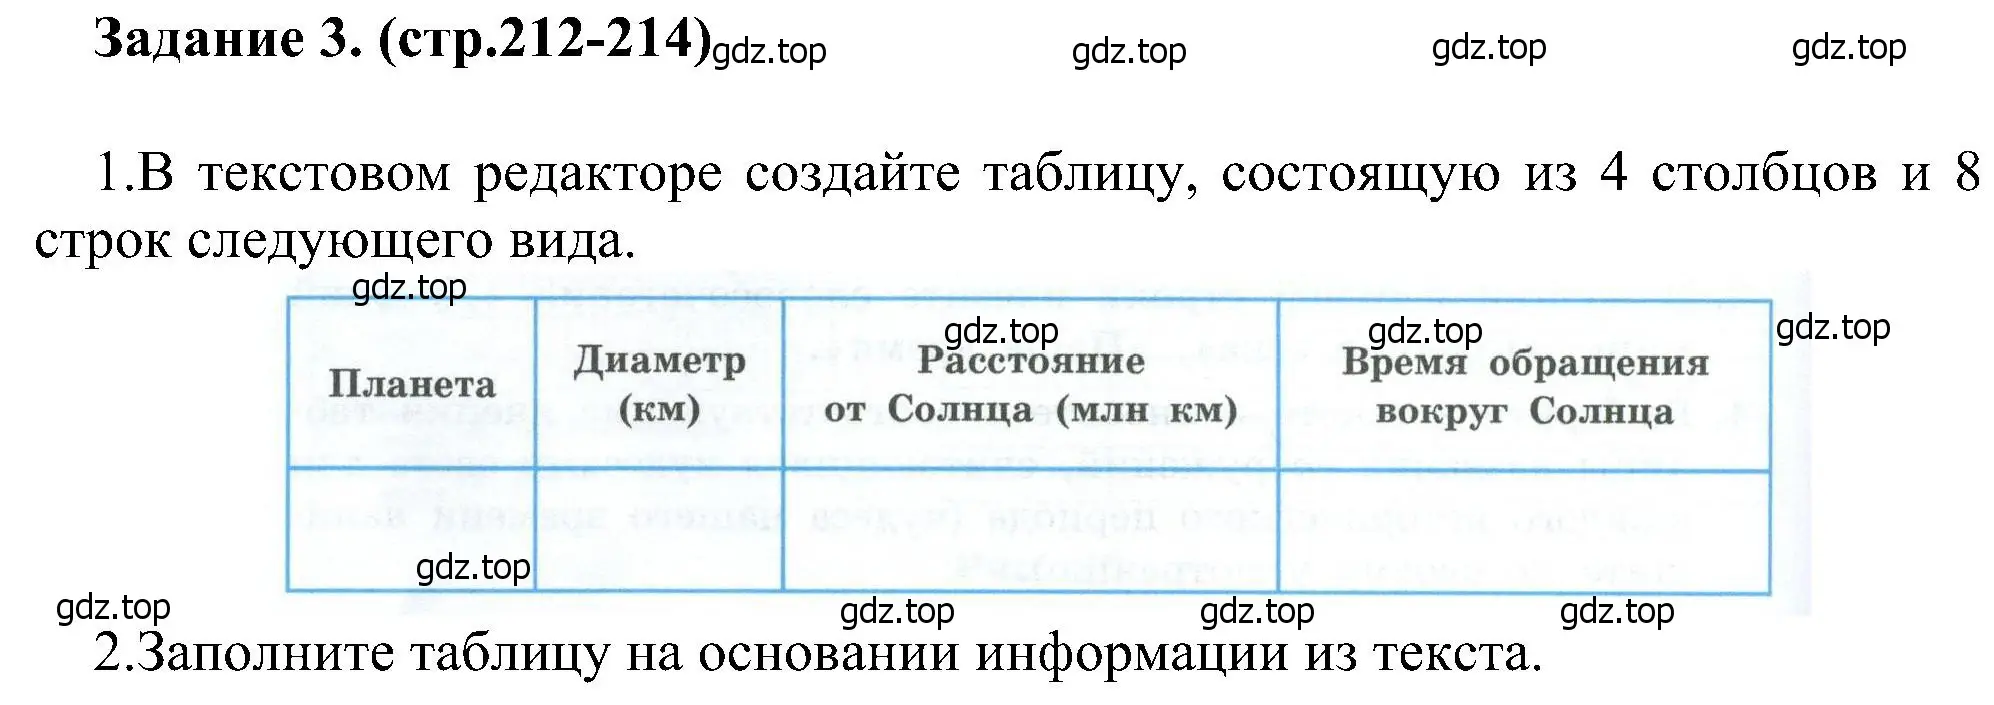 Решение номер 3 (страница 212) гдз по информатике 6 класс Босова, Босова, учебник